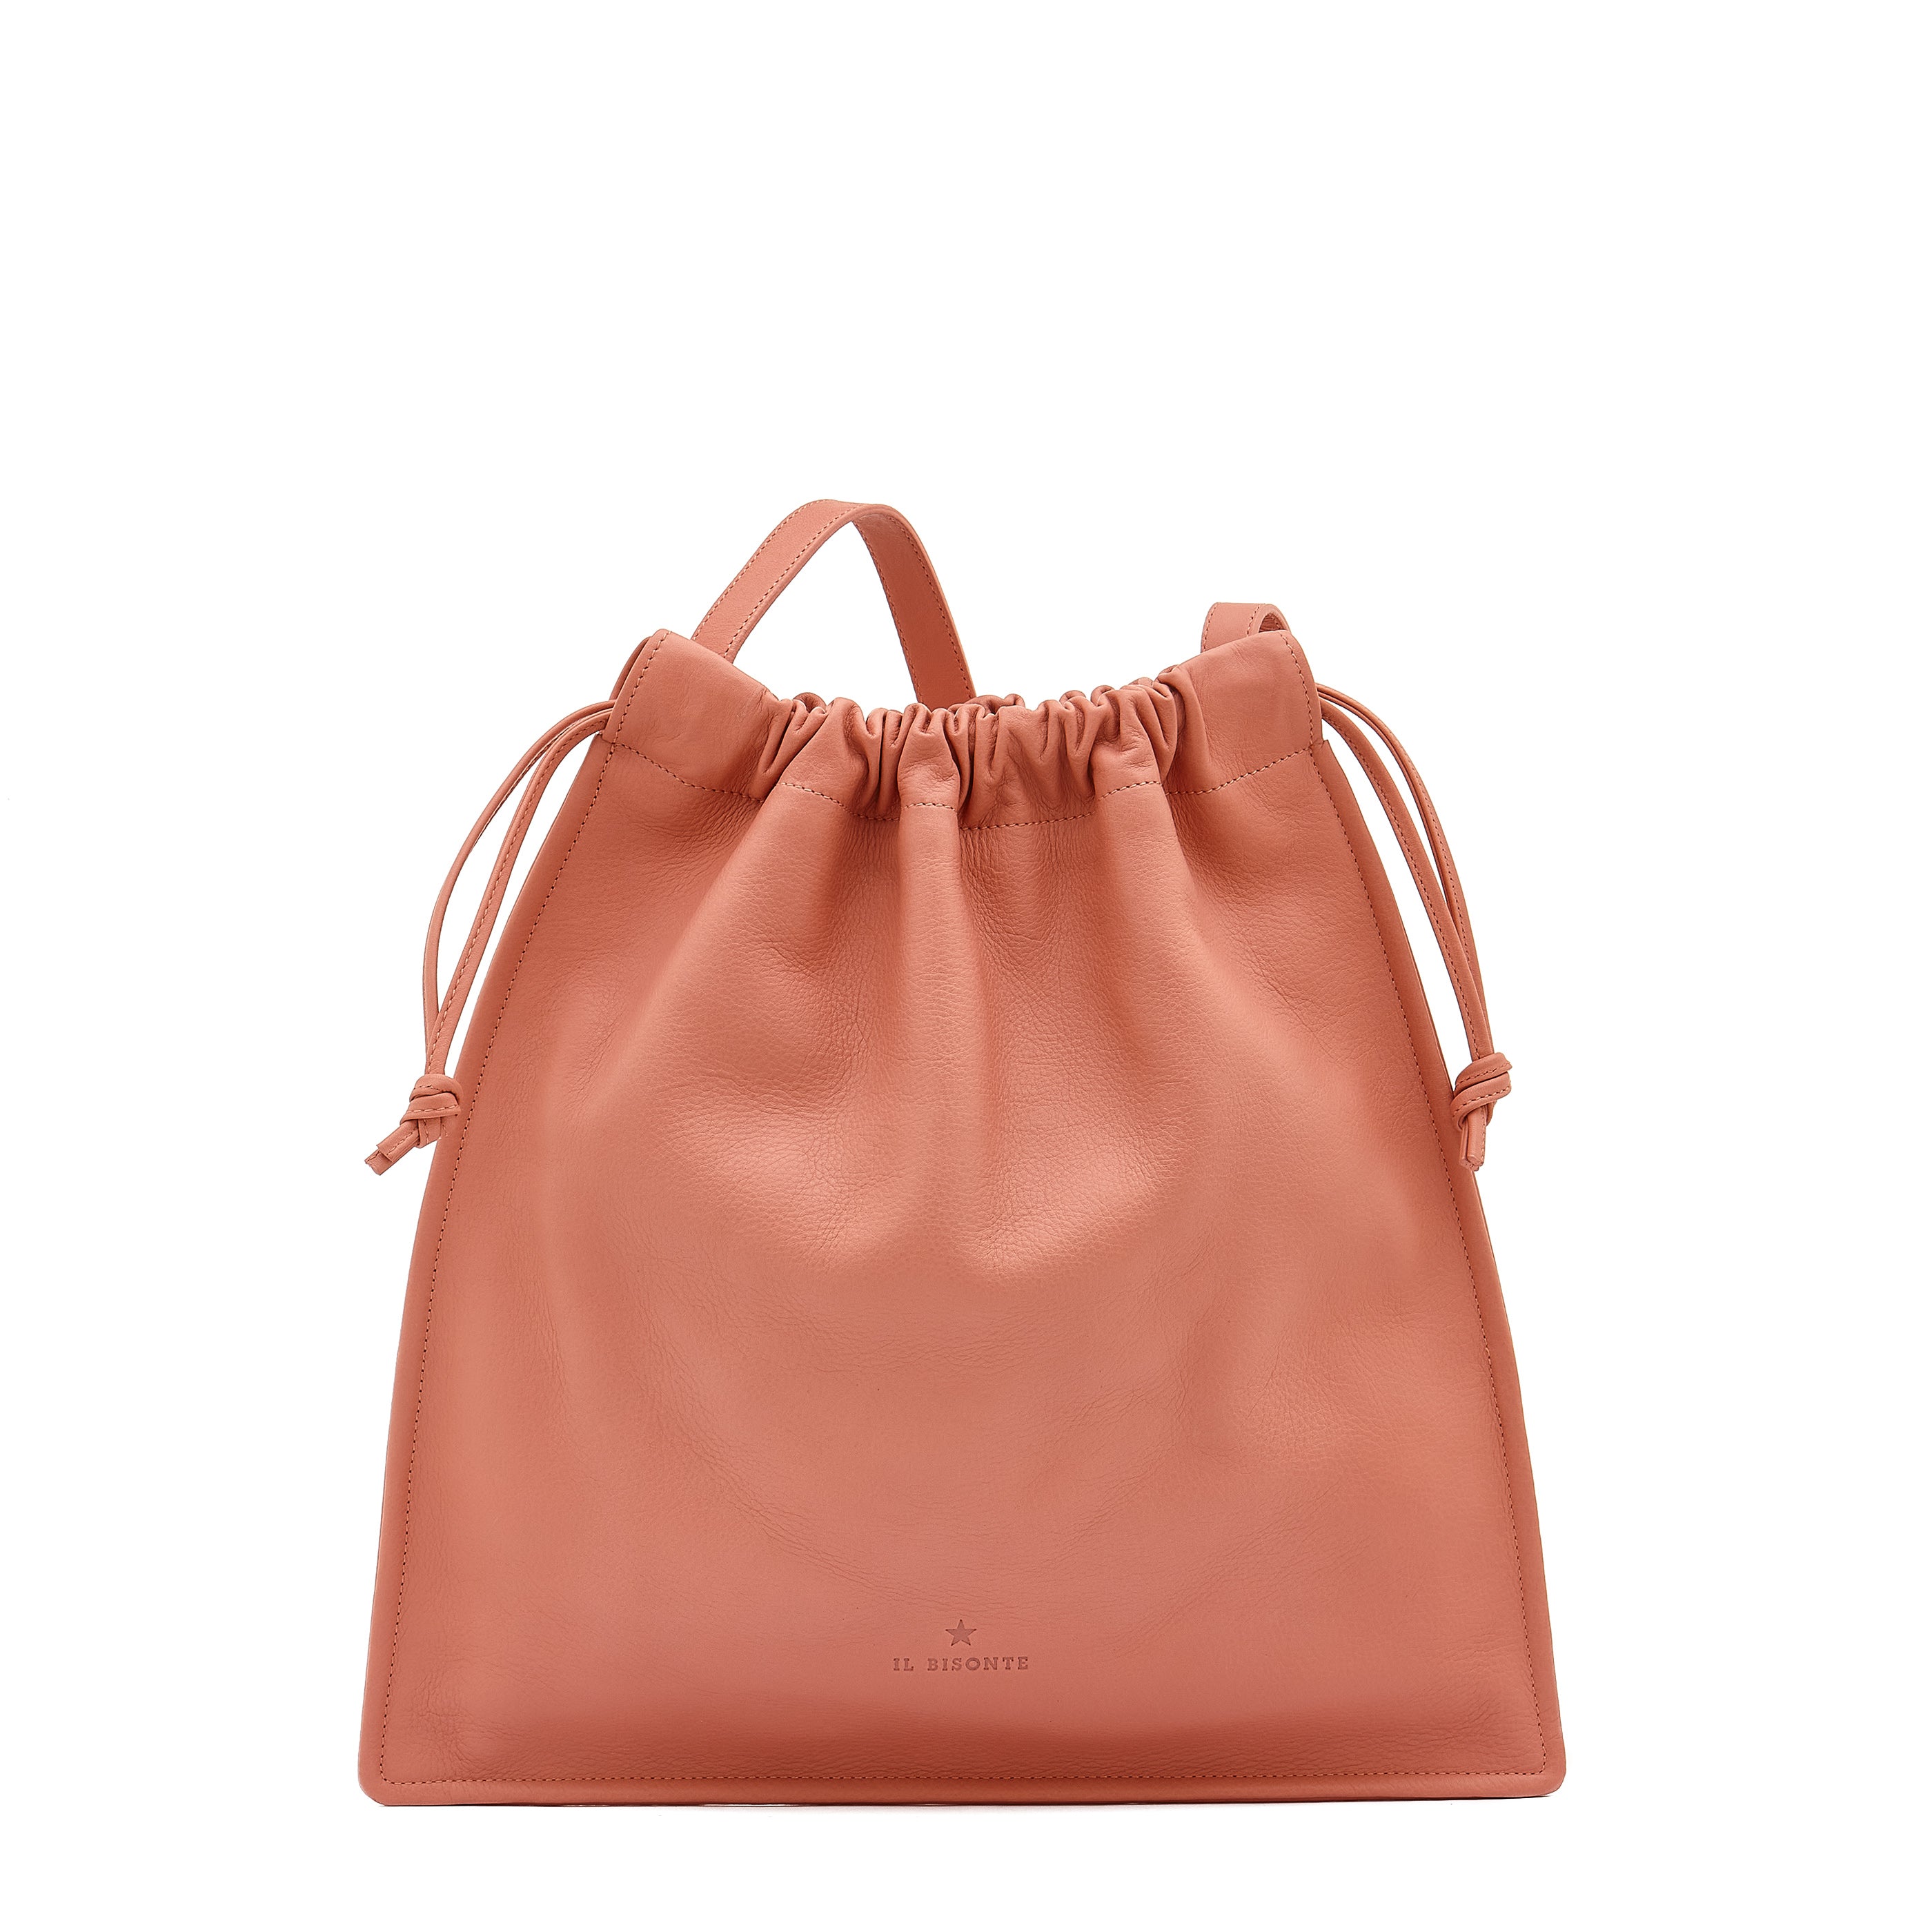 Bellini | Women's shoulder bag in leather color grapefruit